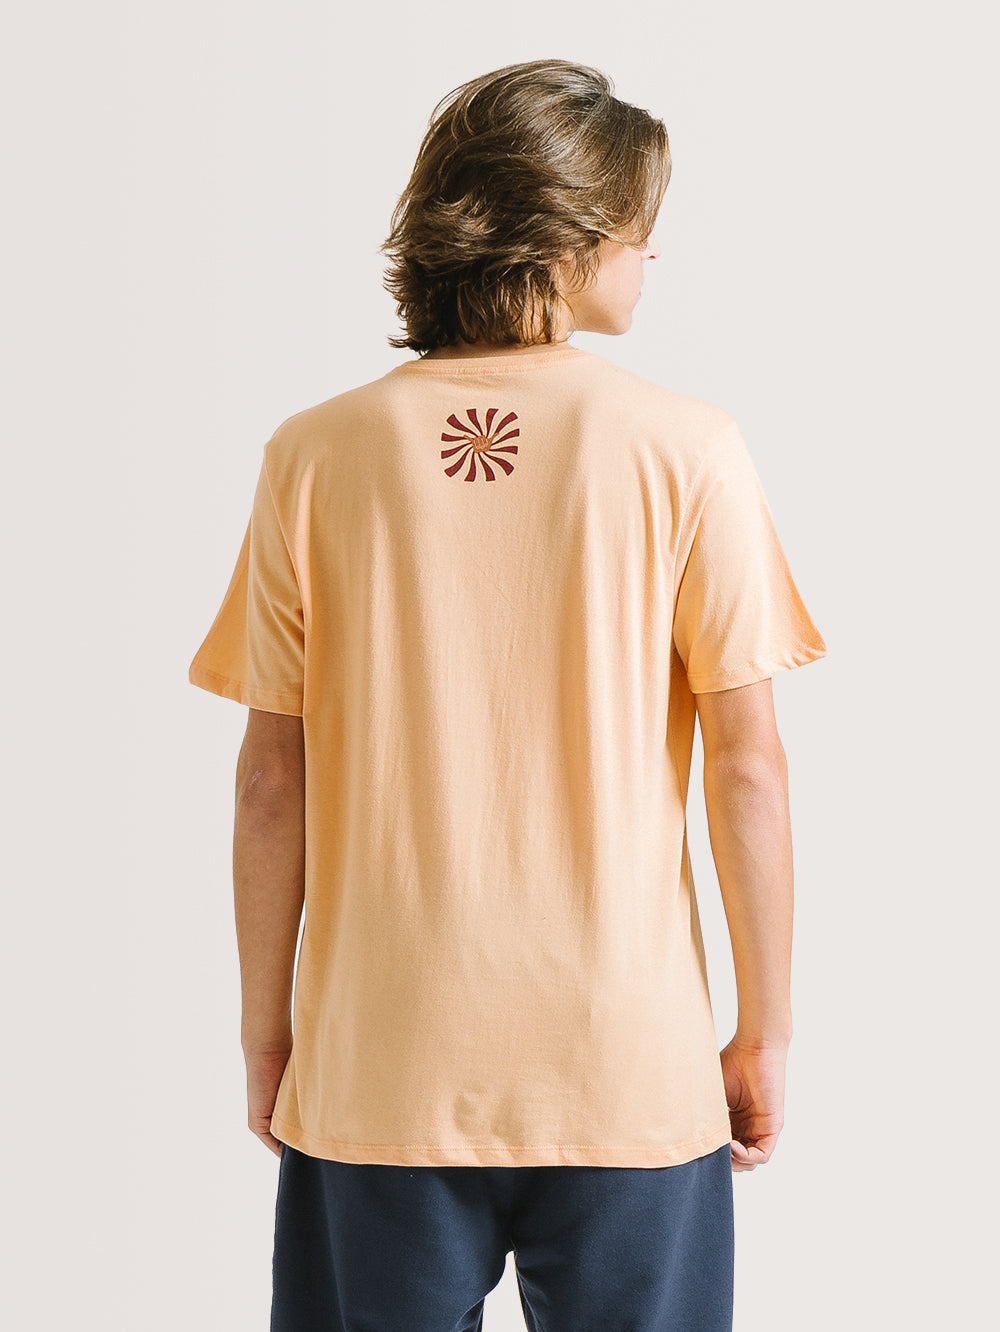 Camiseta Hang Loose Hypno Coral